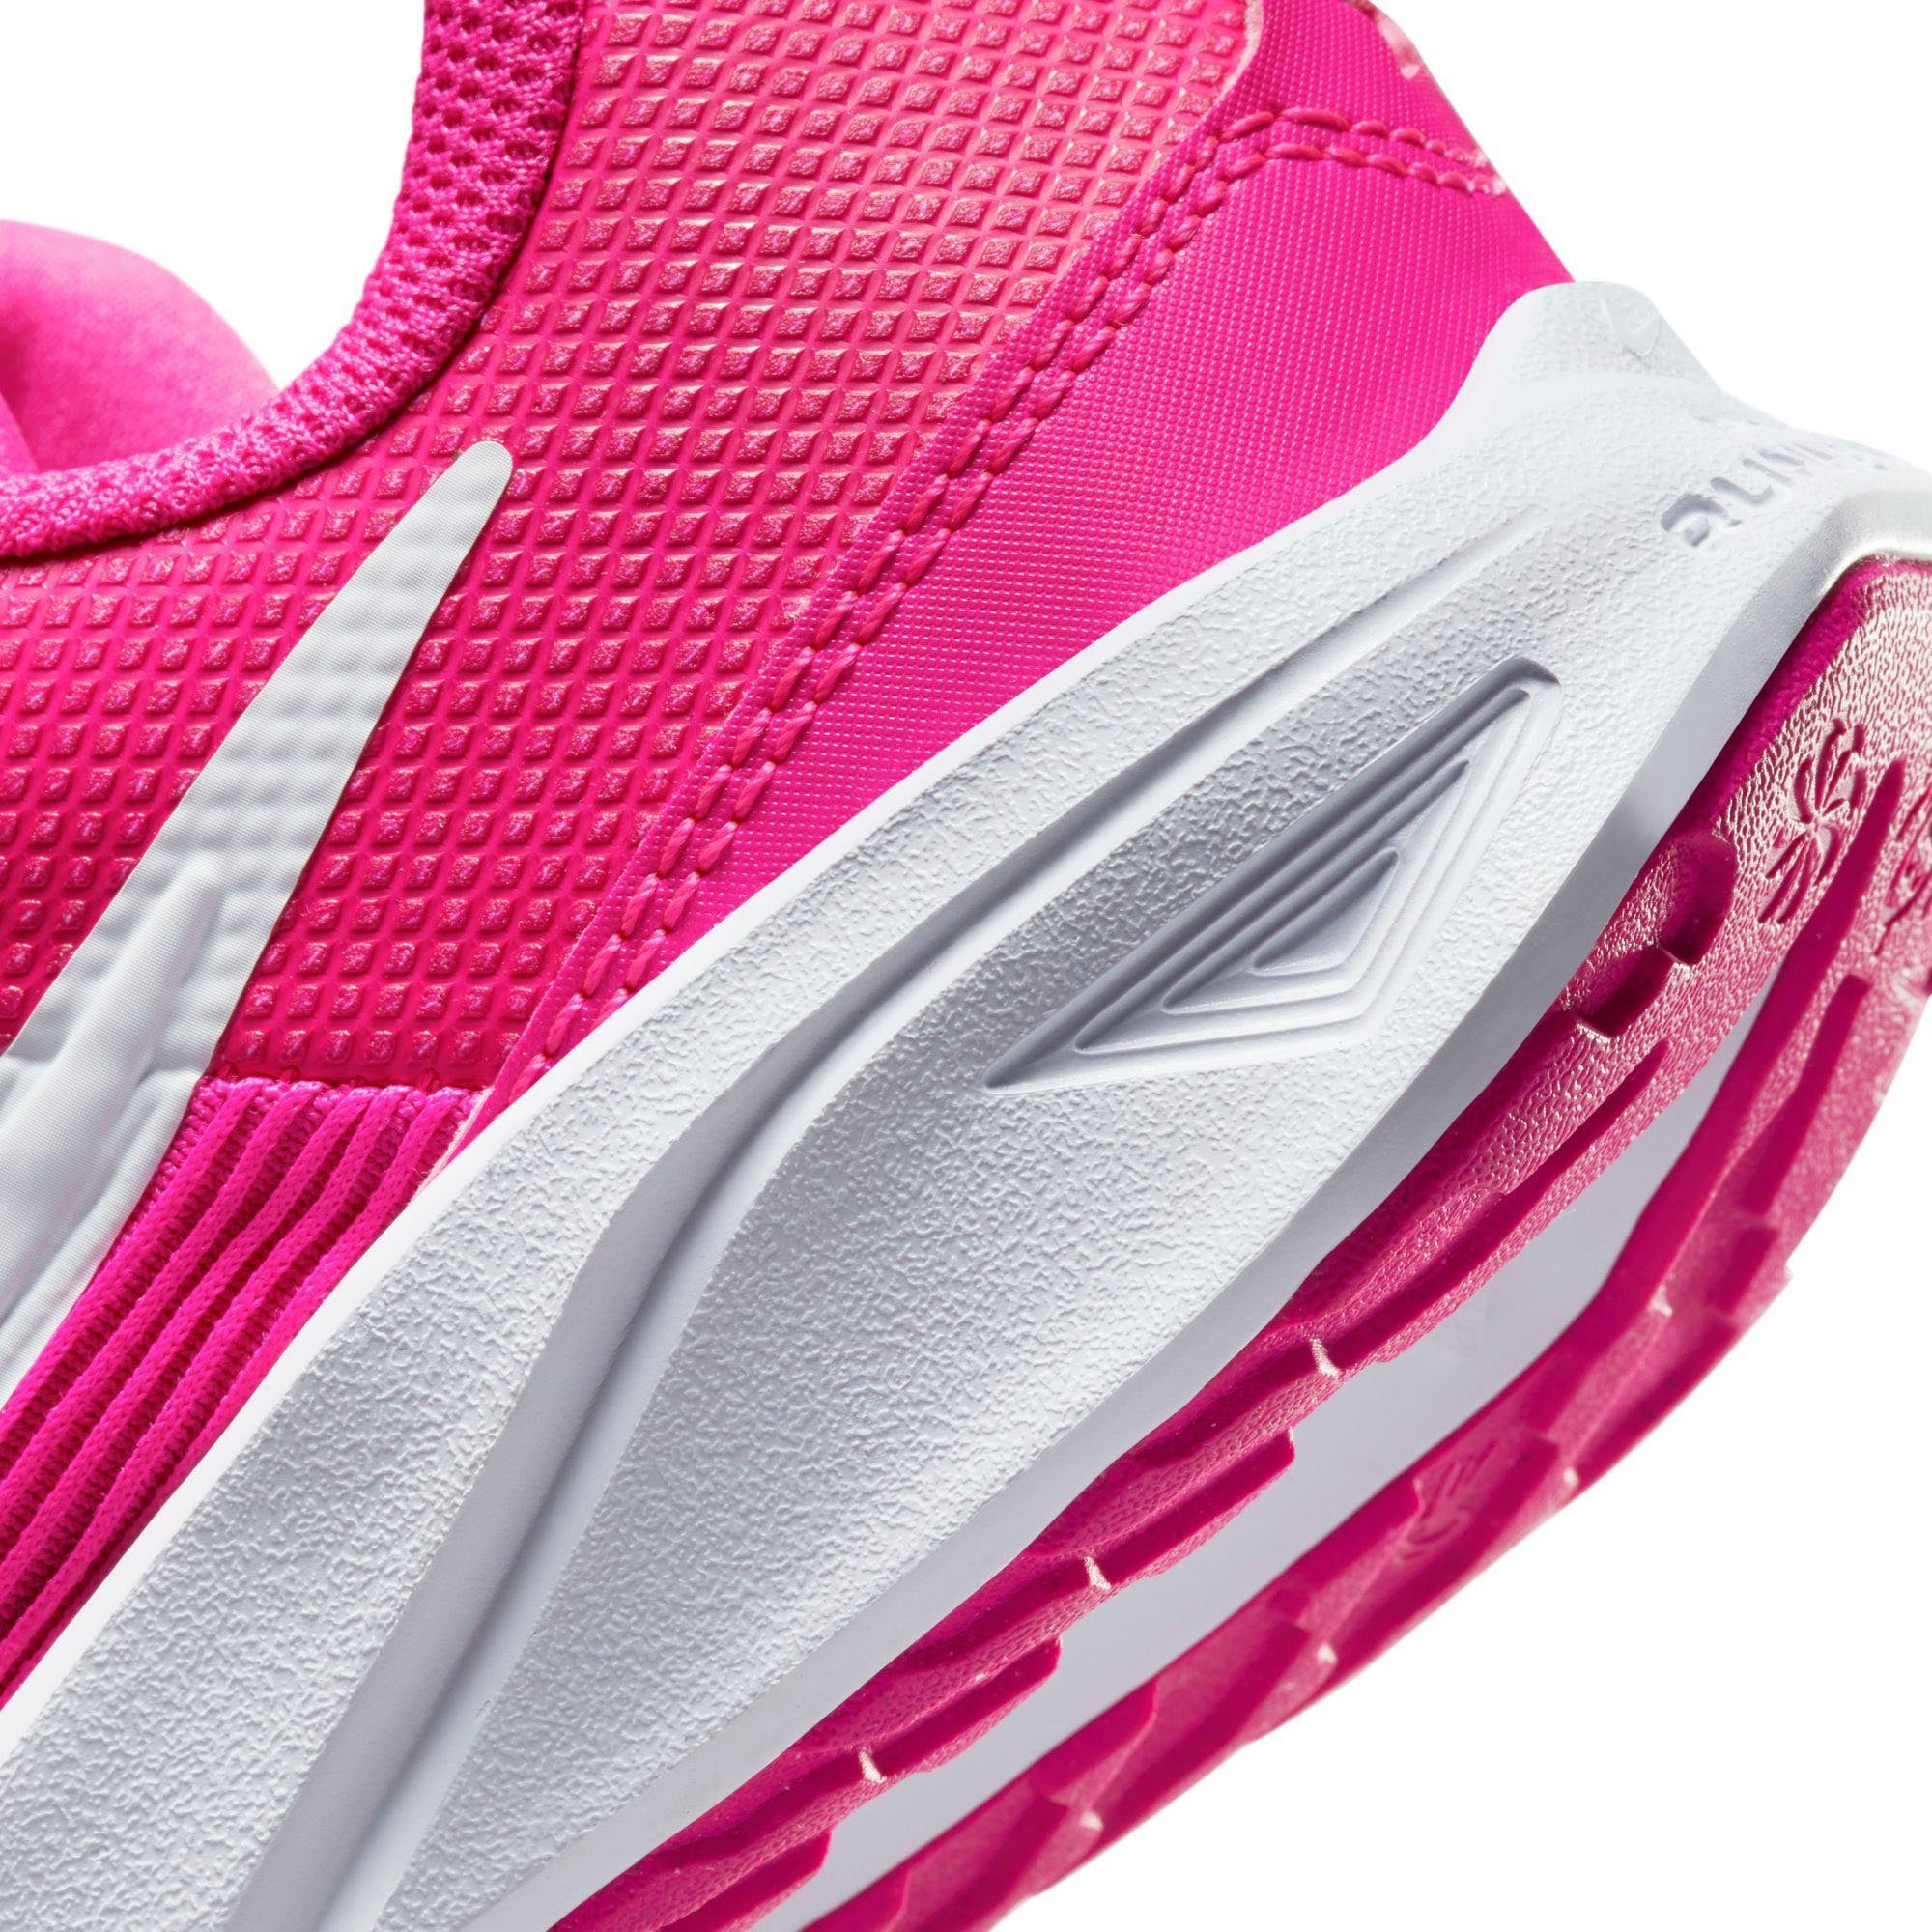 STAR Nike (PS) 4 Laufschuh pink RUNNER